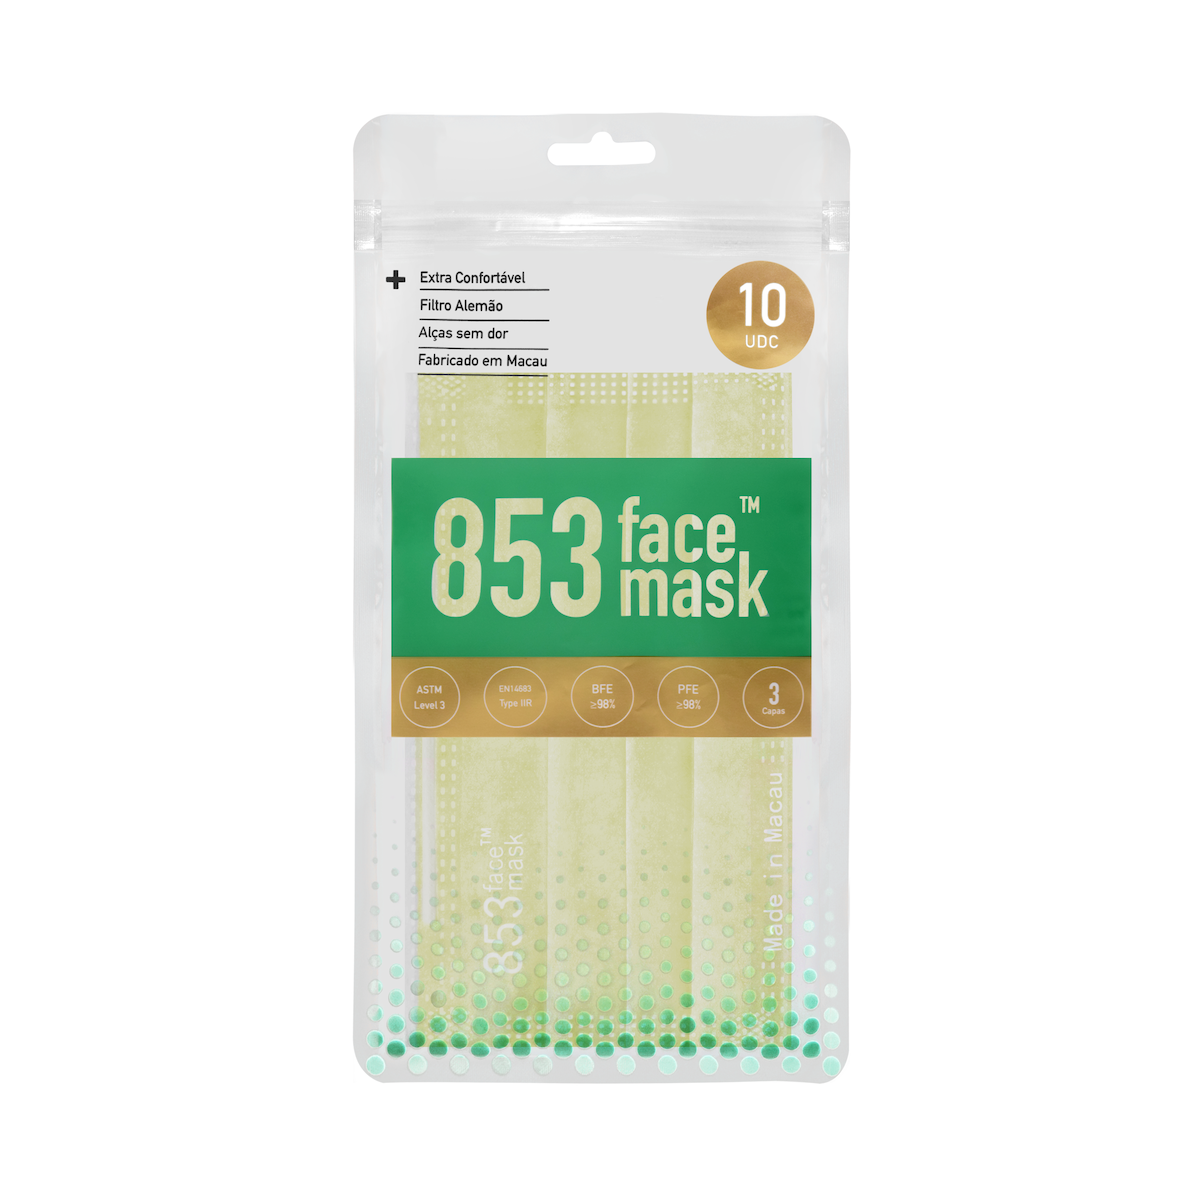 ASTM Level 3 口罩（柔黃色）非獨立包裝10片